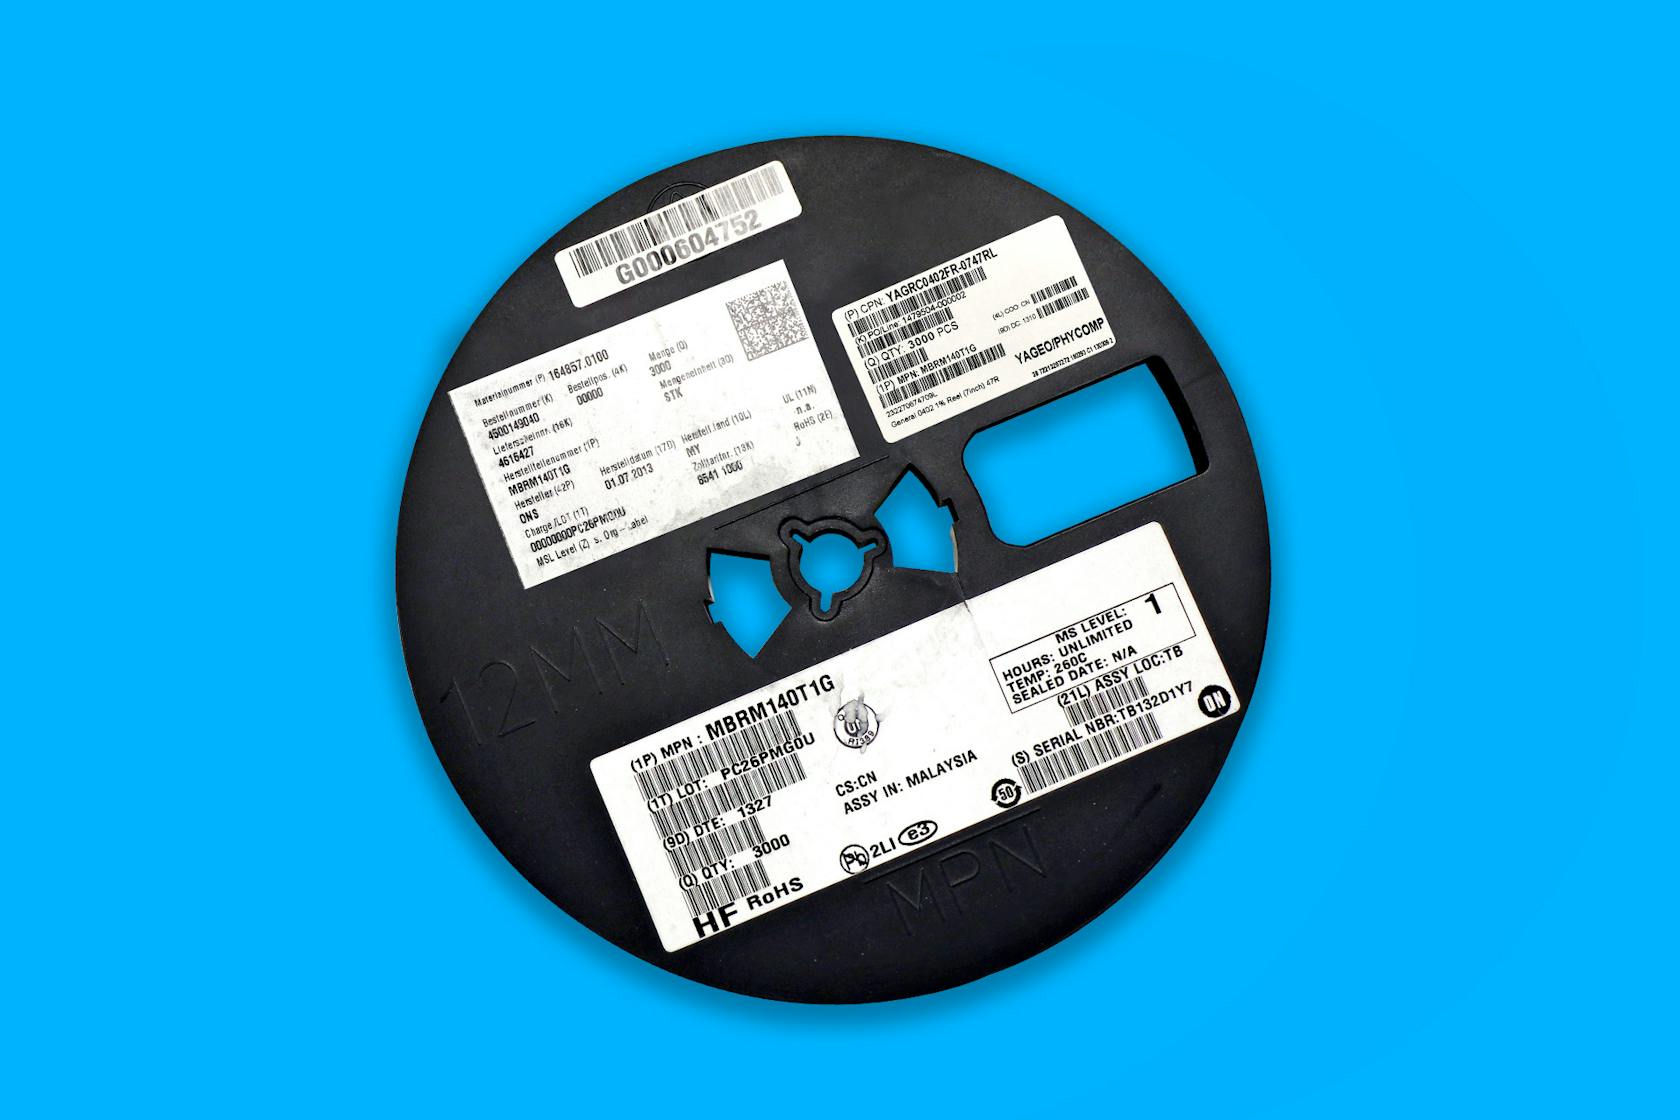 Carrete SMD con pegatinas: Todos los multicódigos deben registrarse correctamente durante la detección de bobinas SMD.